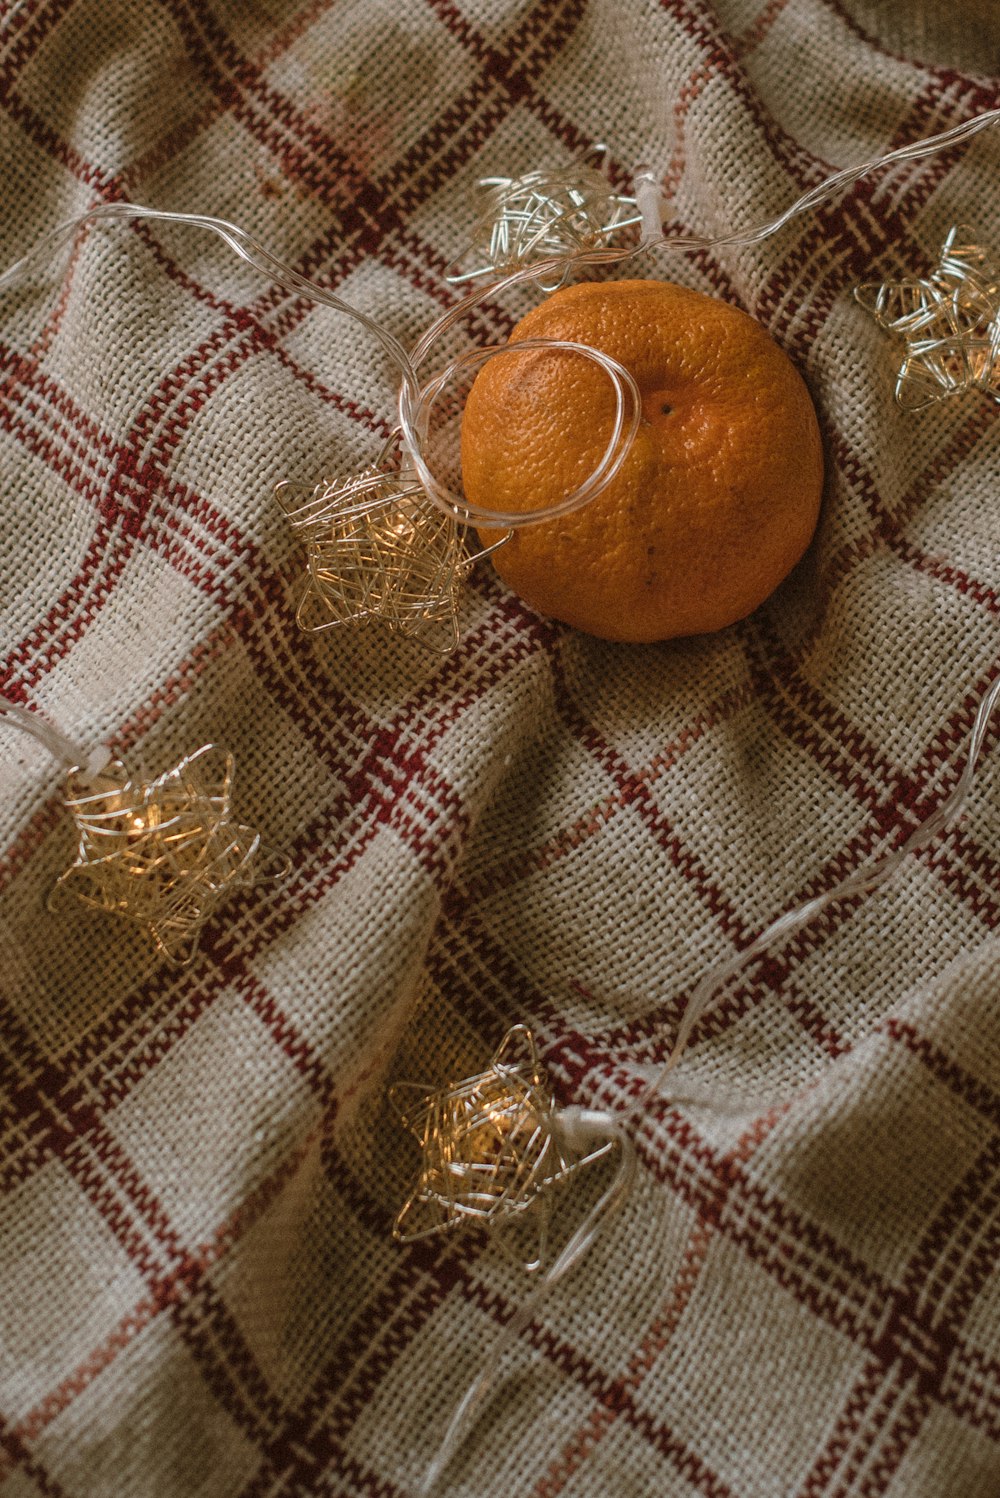 orange fruit on brown and white textile